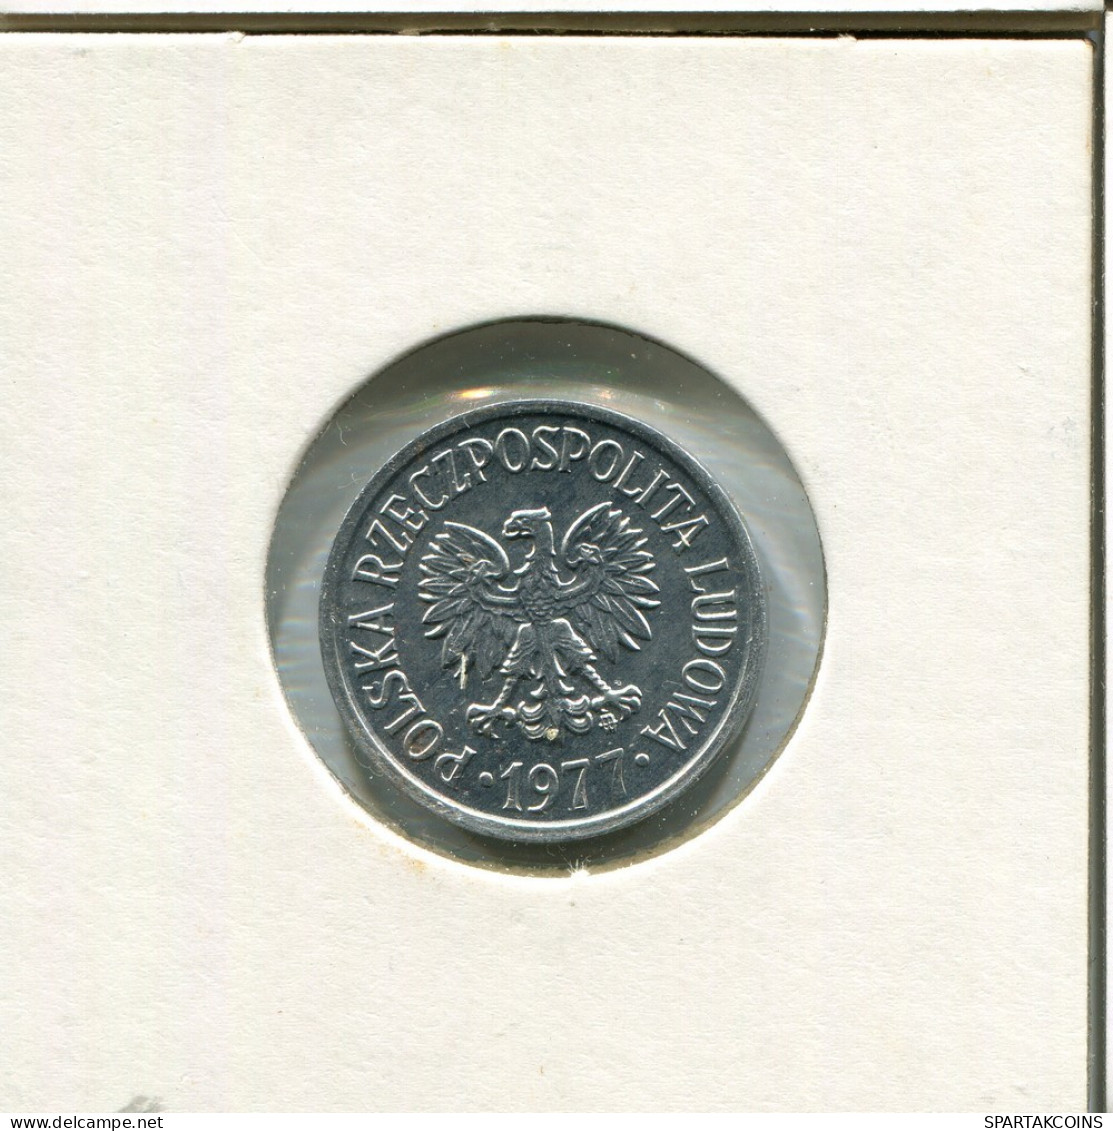 20 GROSZY 1977 POLAND Coin #AR776.U.A - Pologne